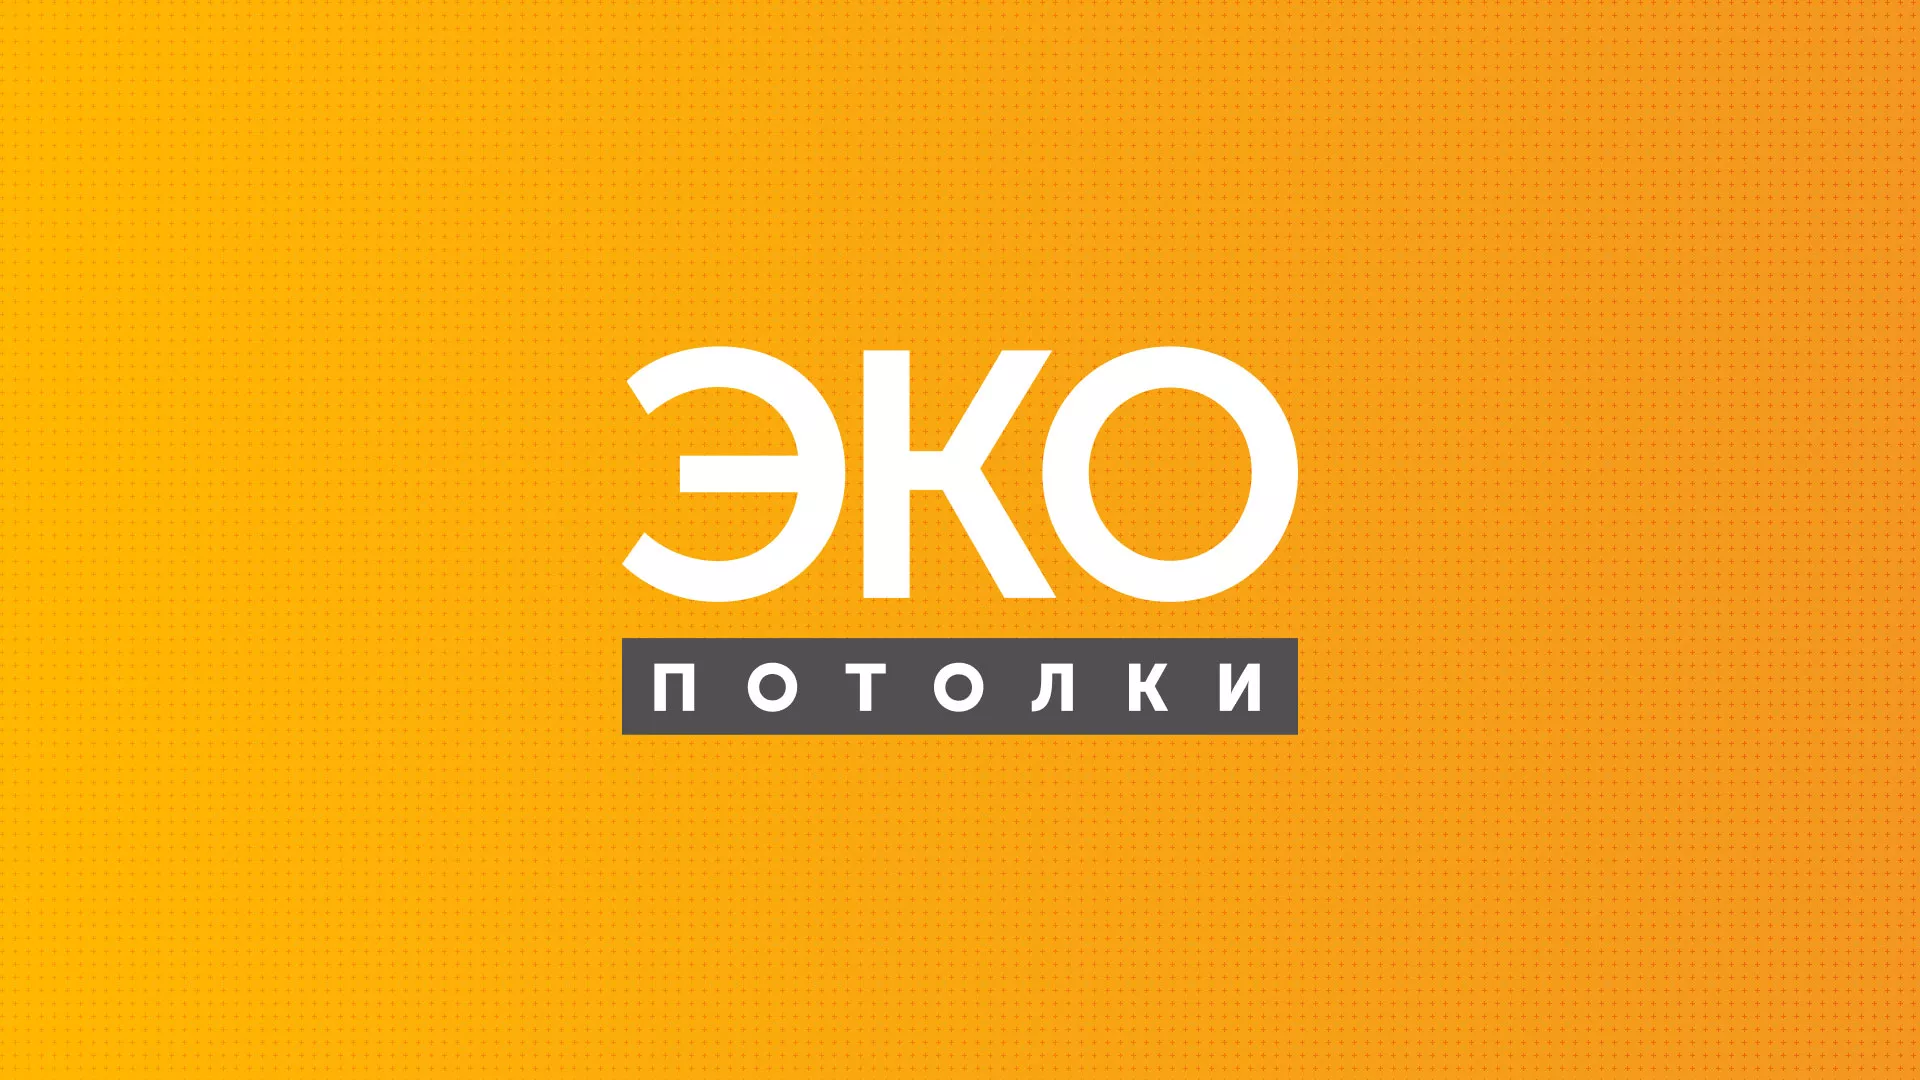 Разработка сайта по натяжным потолкам «Эко Потолки» в Павлово